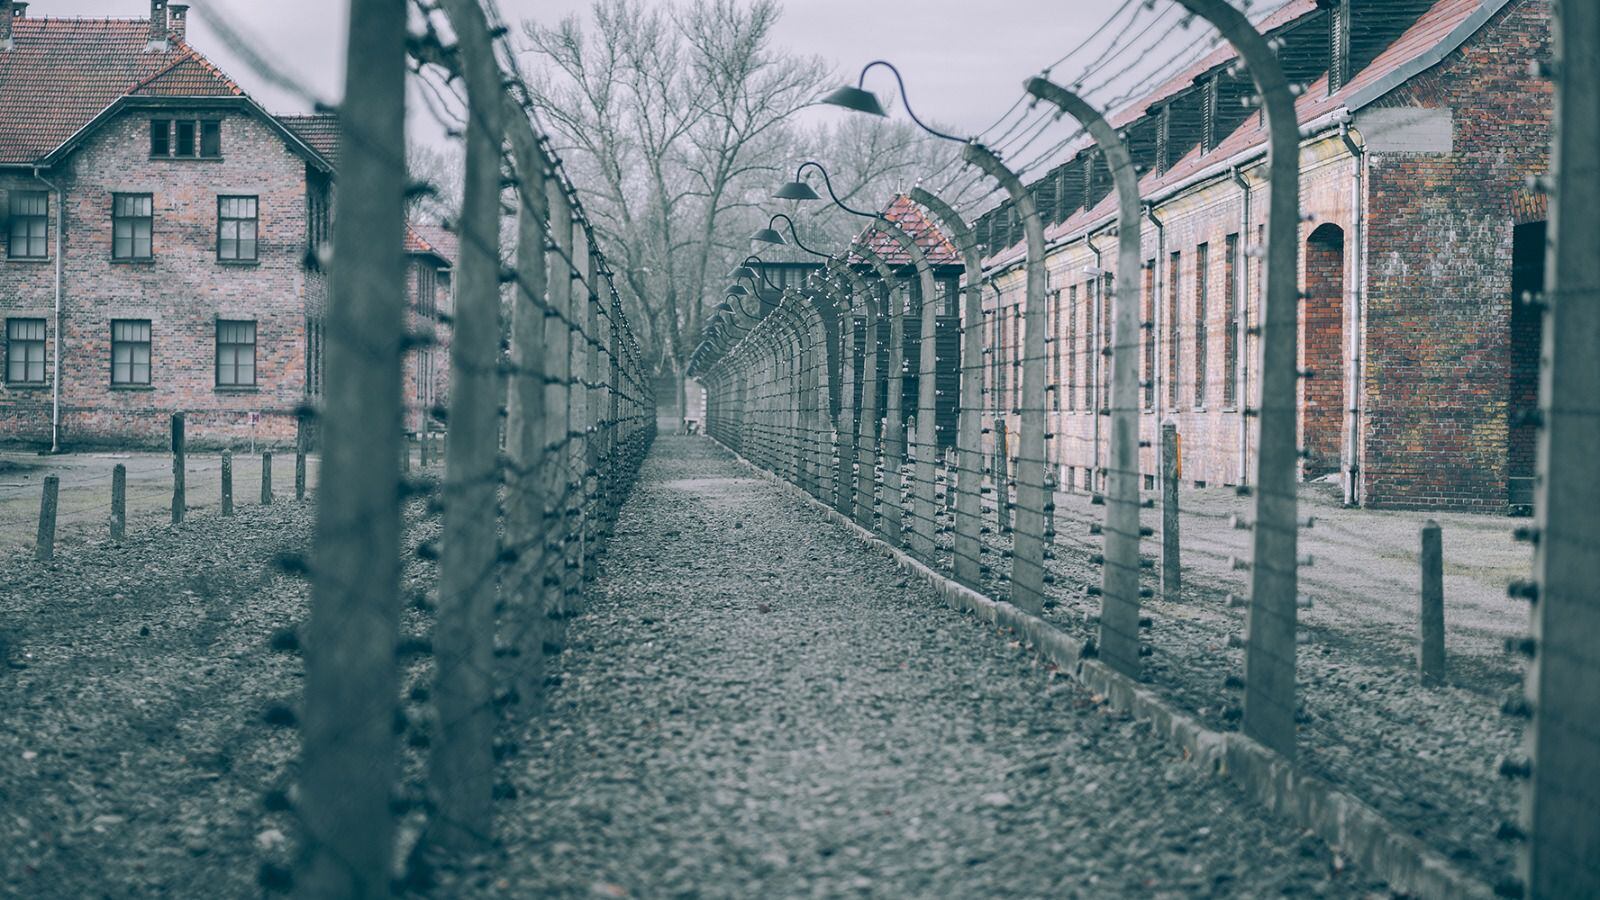 Campo de concentración de Auschwitz. (Foto: Shutterstock)